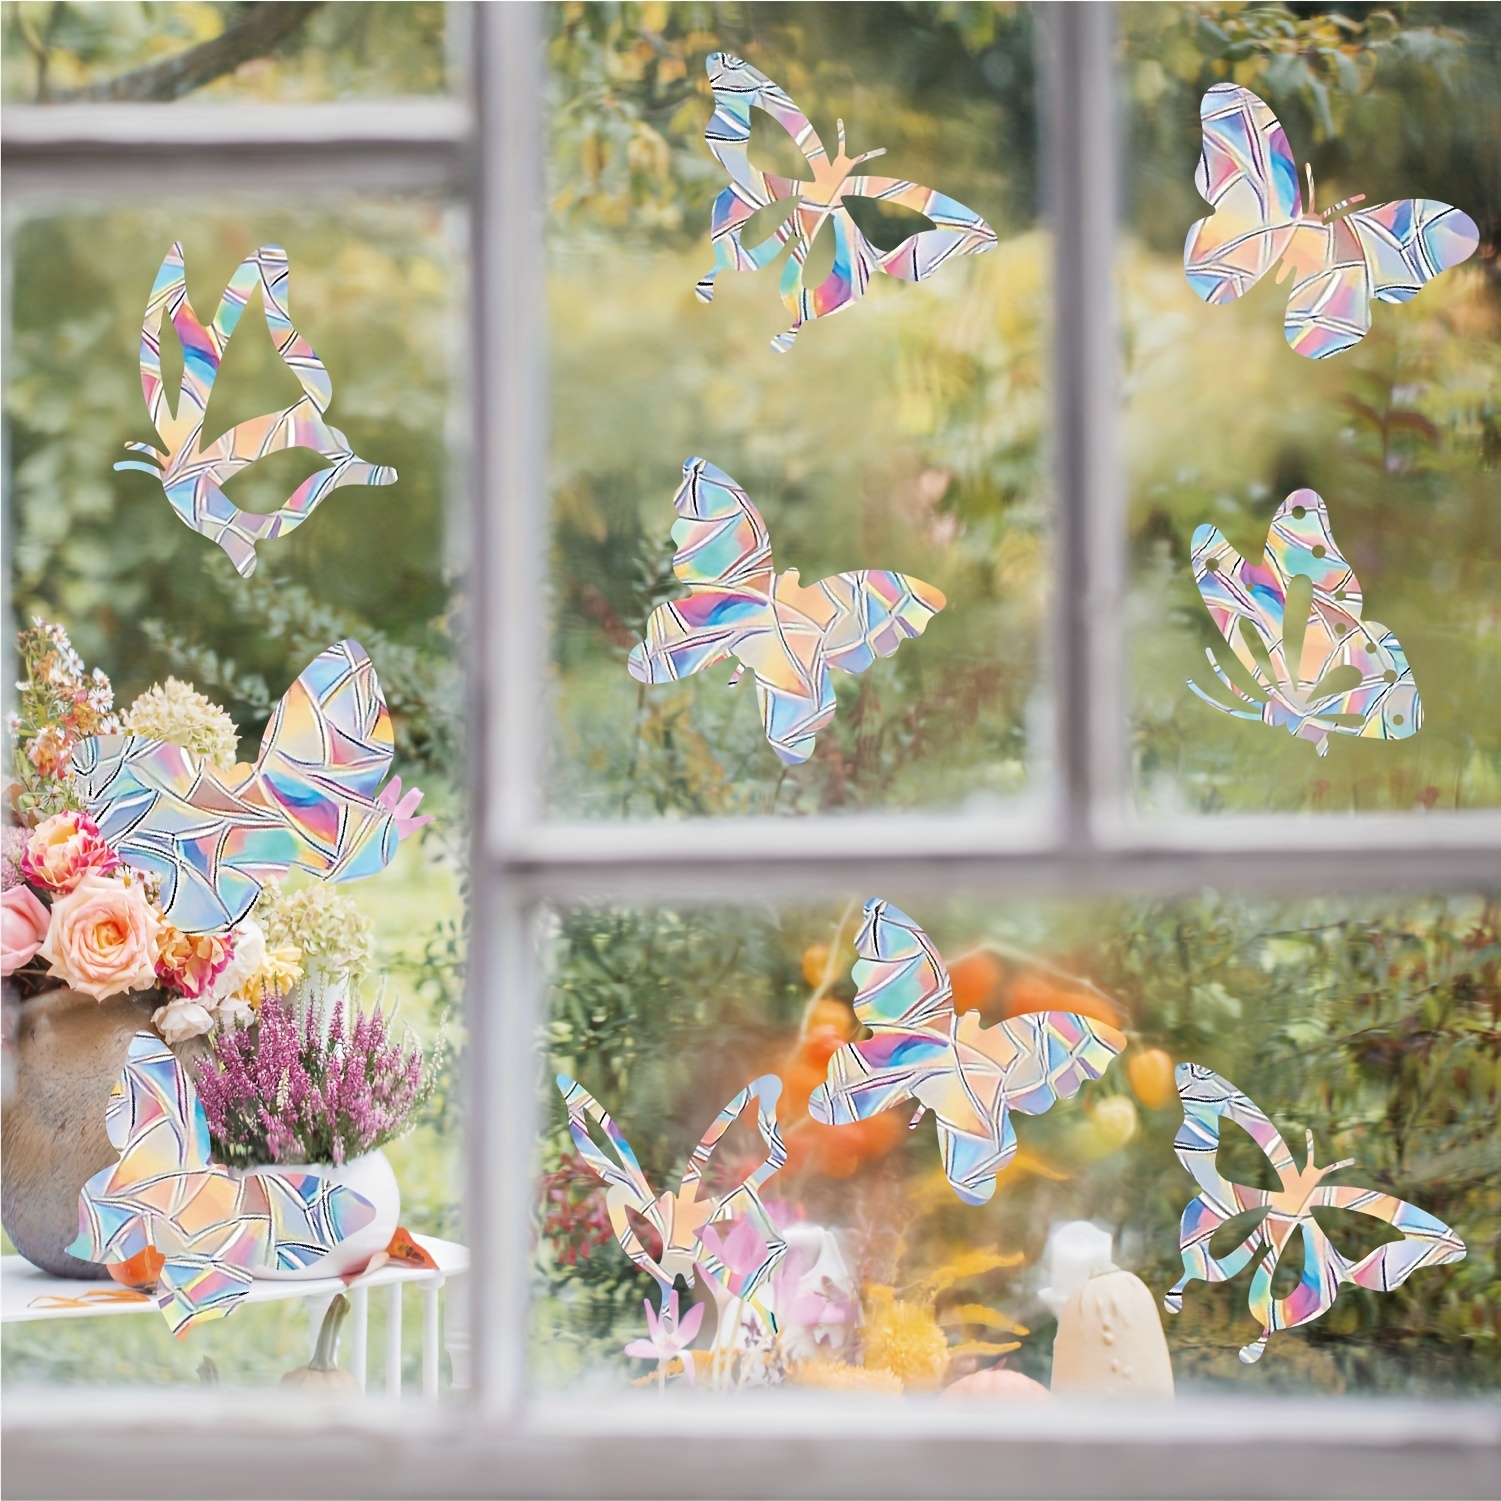 Carevas 9 feuilles mignon fenêtre s'accroche bricolage fleur plante motif  fenêtre autocollants amovible auto-adhésif fenêtre décalcomanies amovible  vinyle pour décoration de fenêtre en verre 